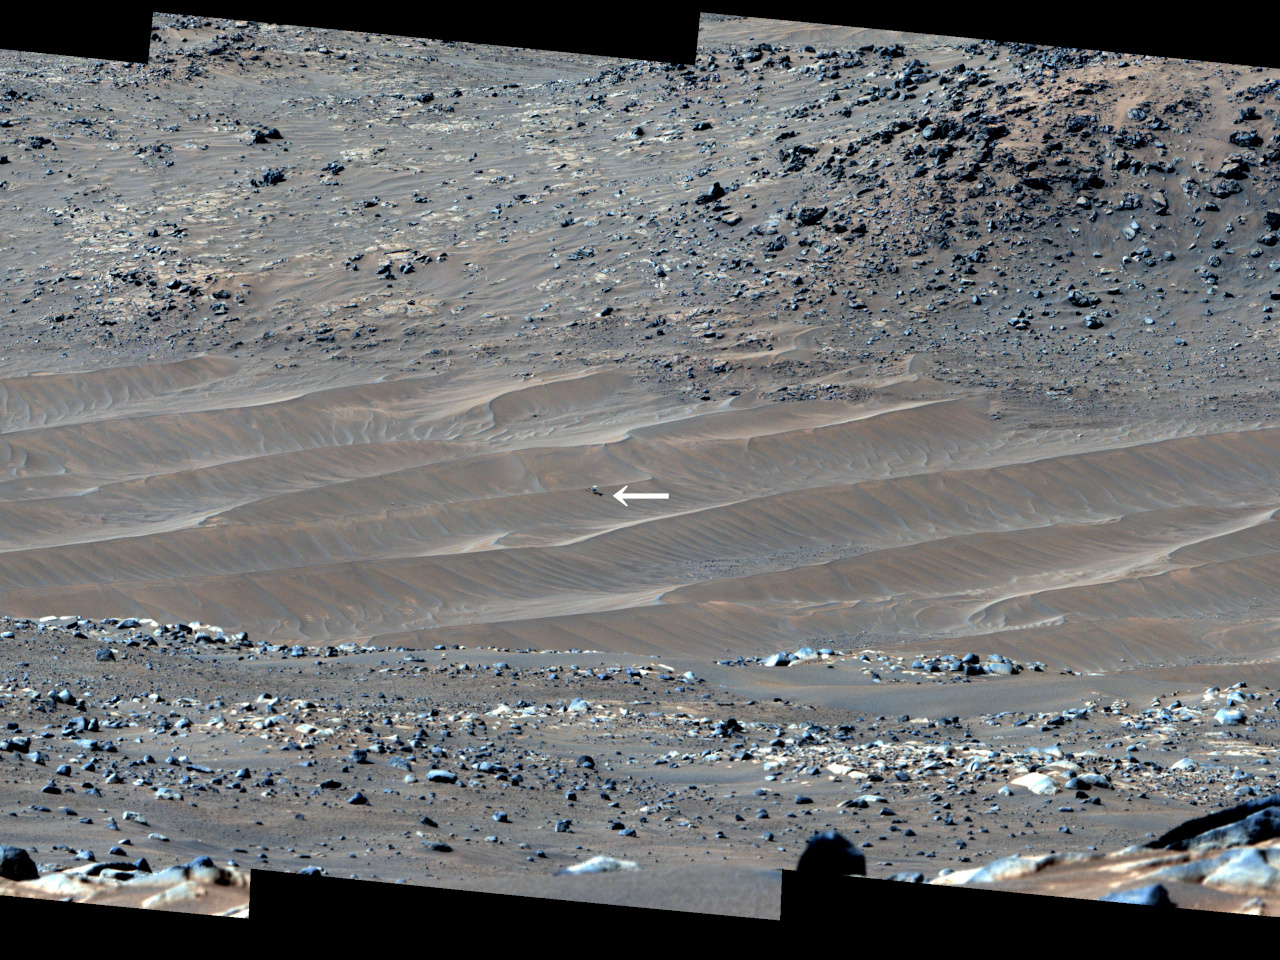 火星ヘリ「インジェニュイティ」の停止地点、「指輪物語」にちなんだ地名に